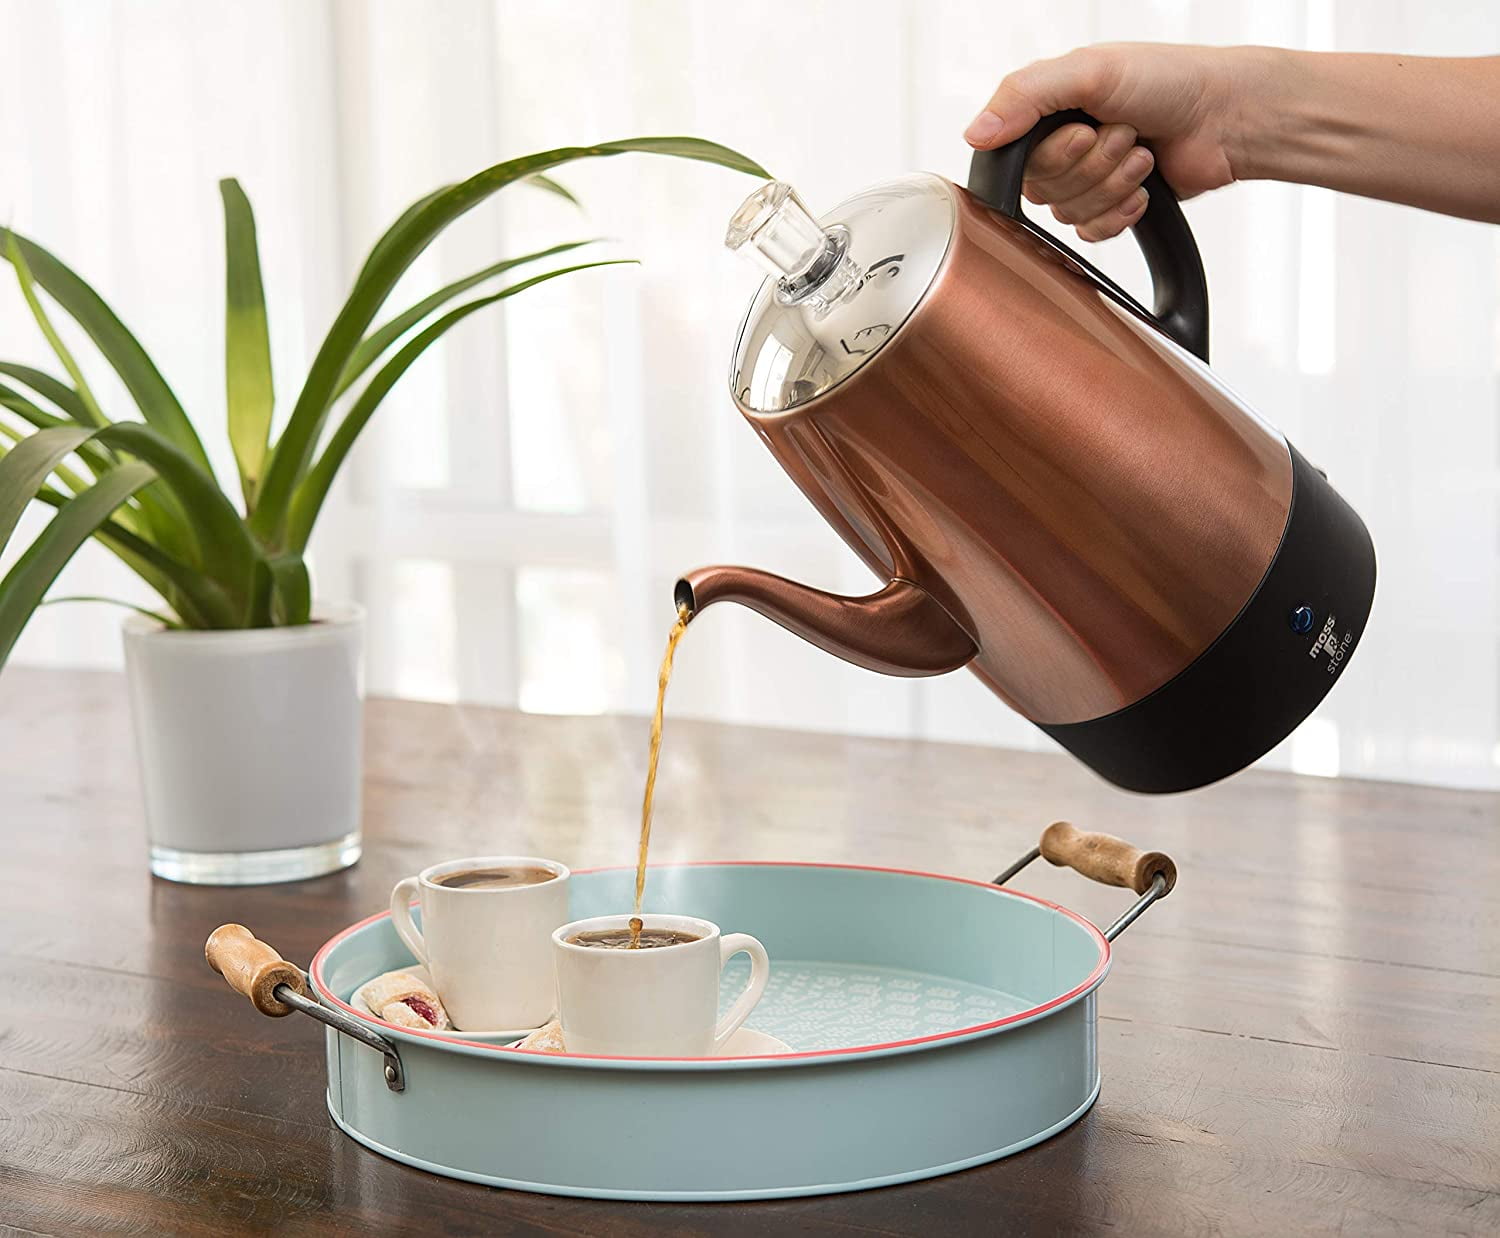  Mixpresso Electric Coffee Percolator Copper Body with